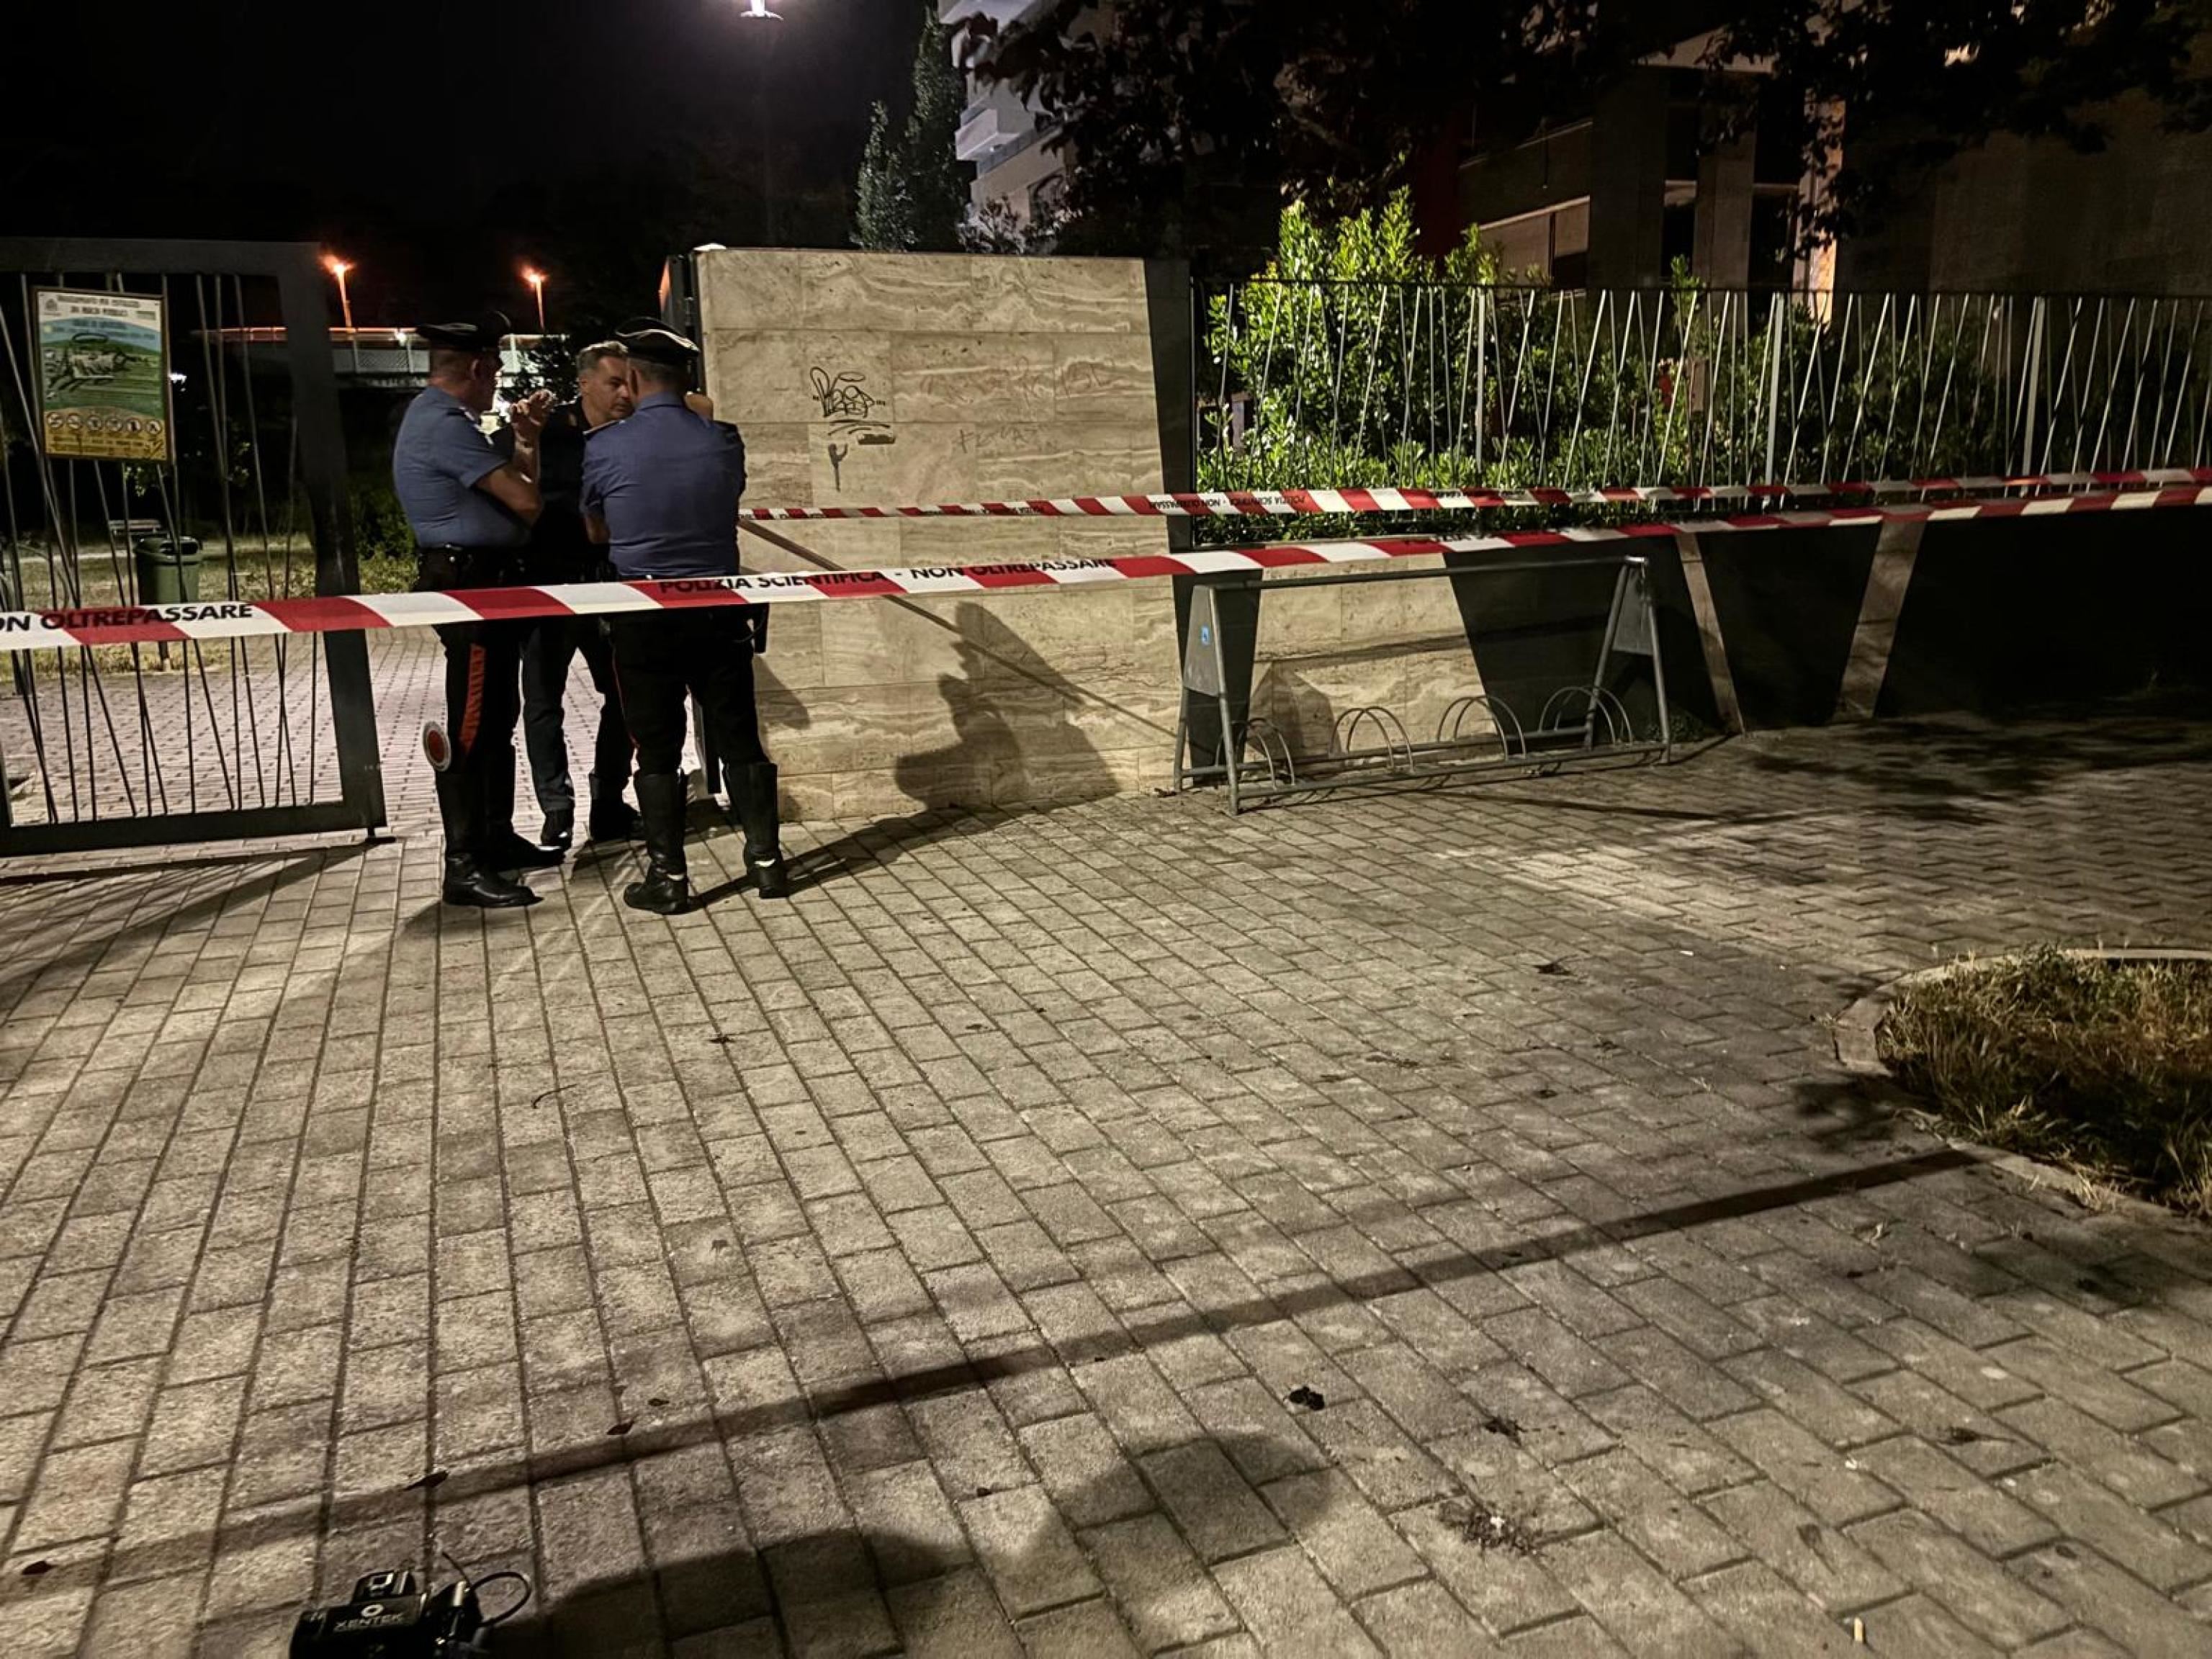 L'ingresso del parco Baden Powell, a Pescara, dove ieri sera è stato trovato il corpo del 17enne